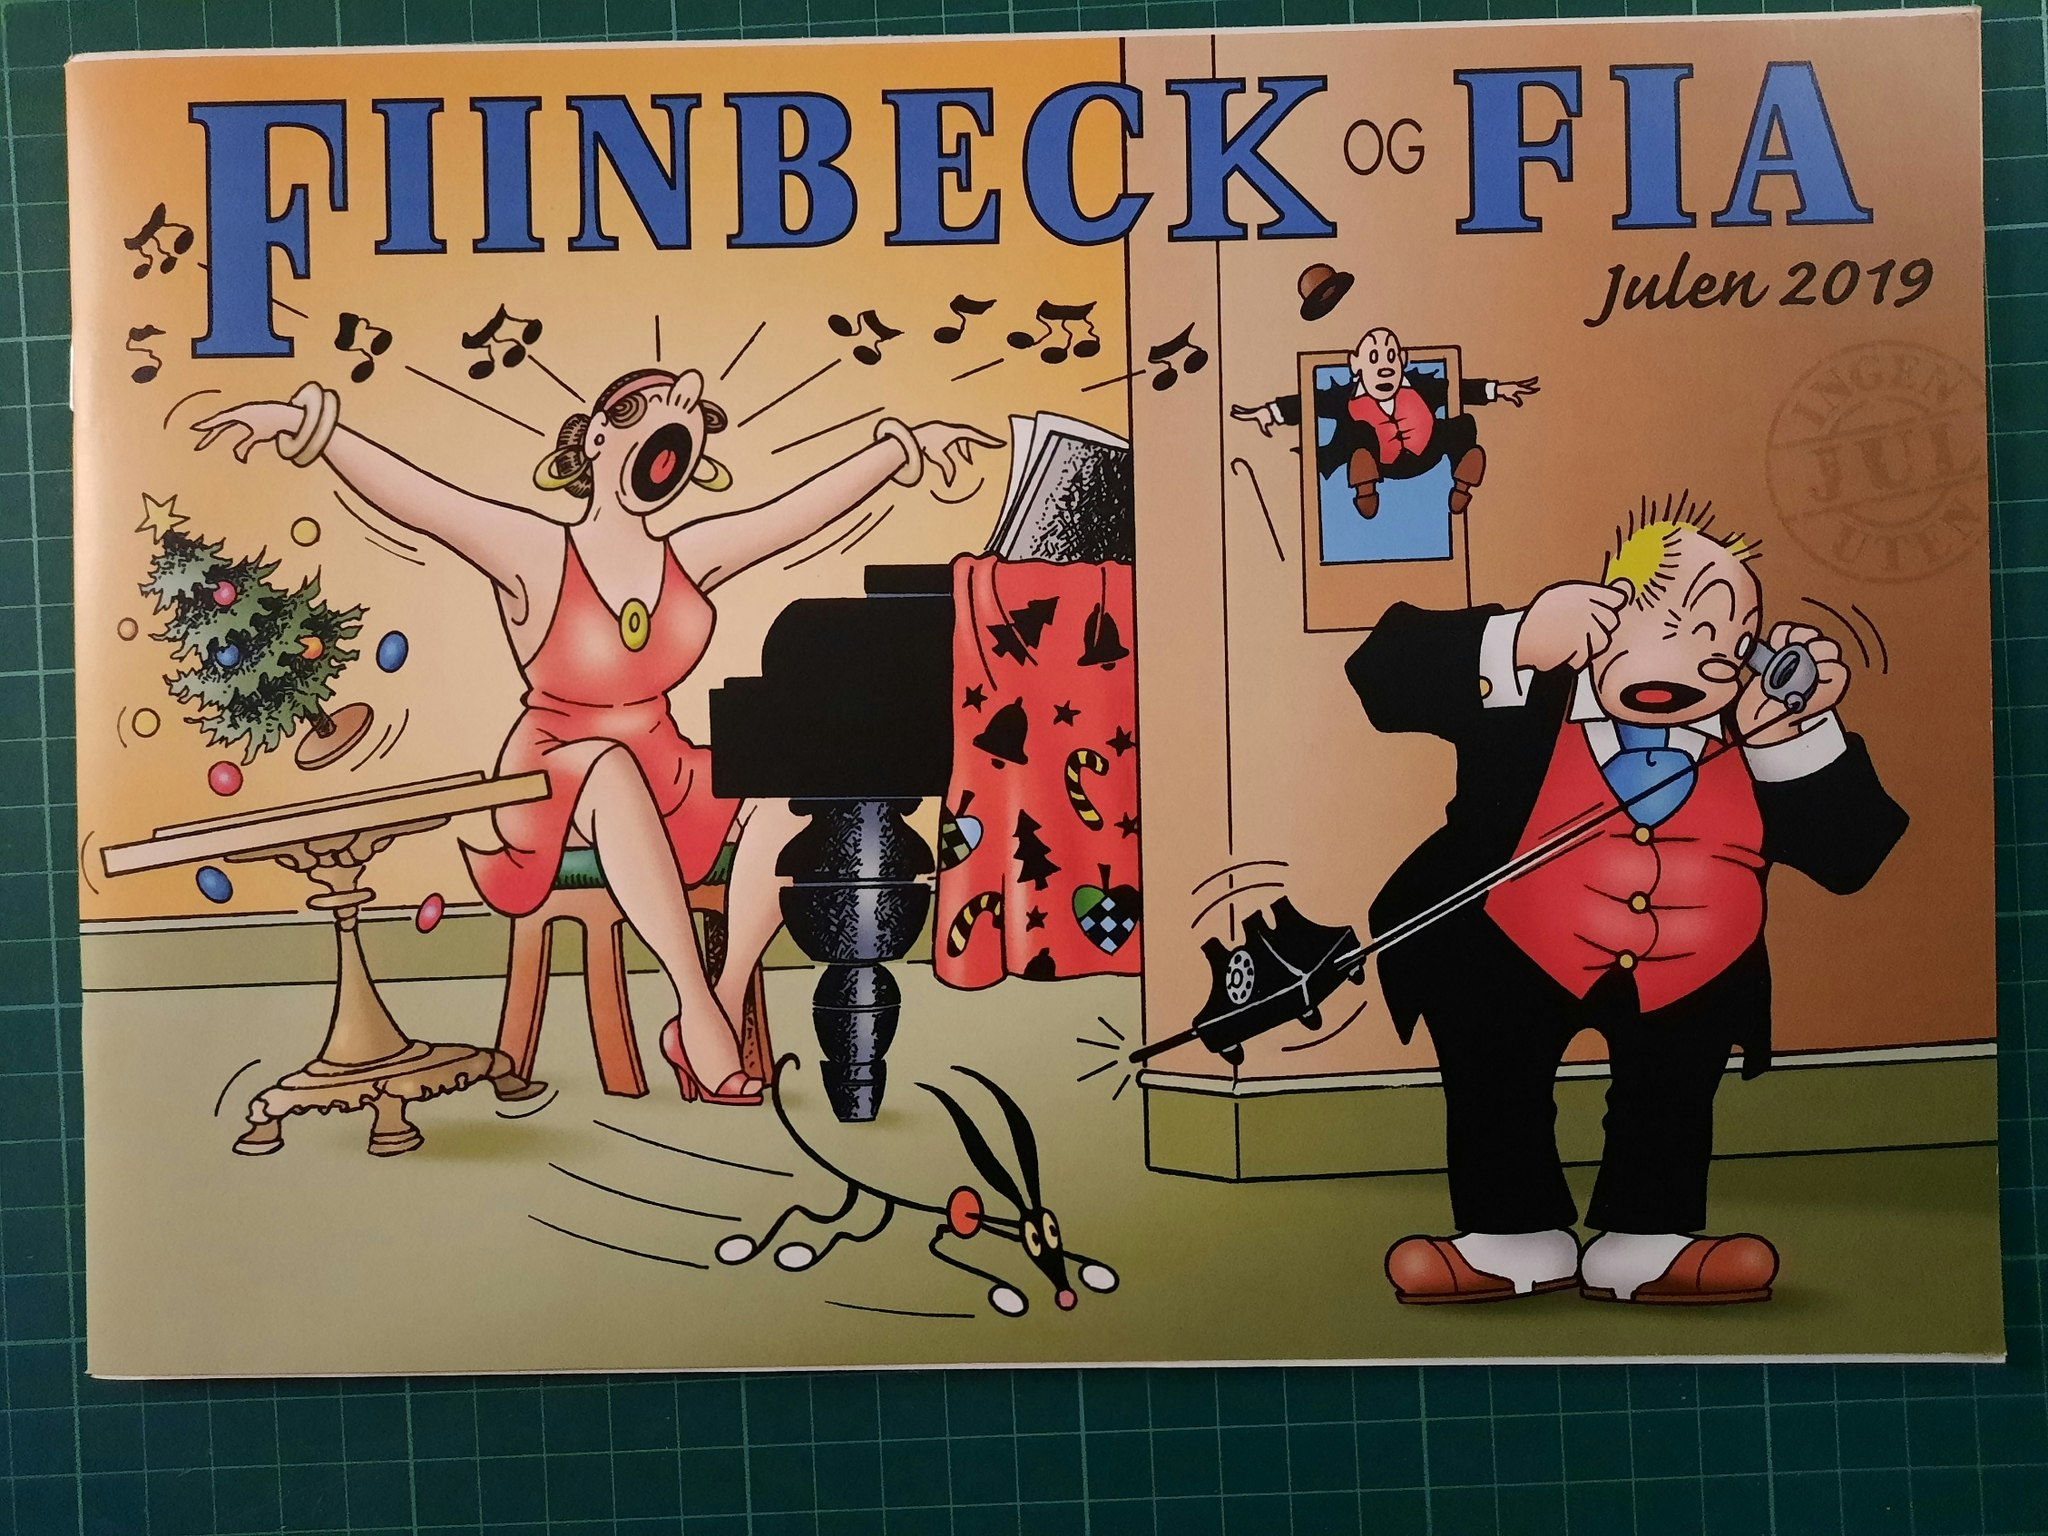 Fiinbeck og Fia 2019